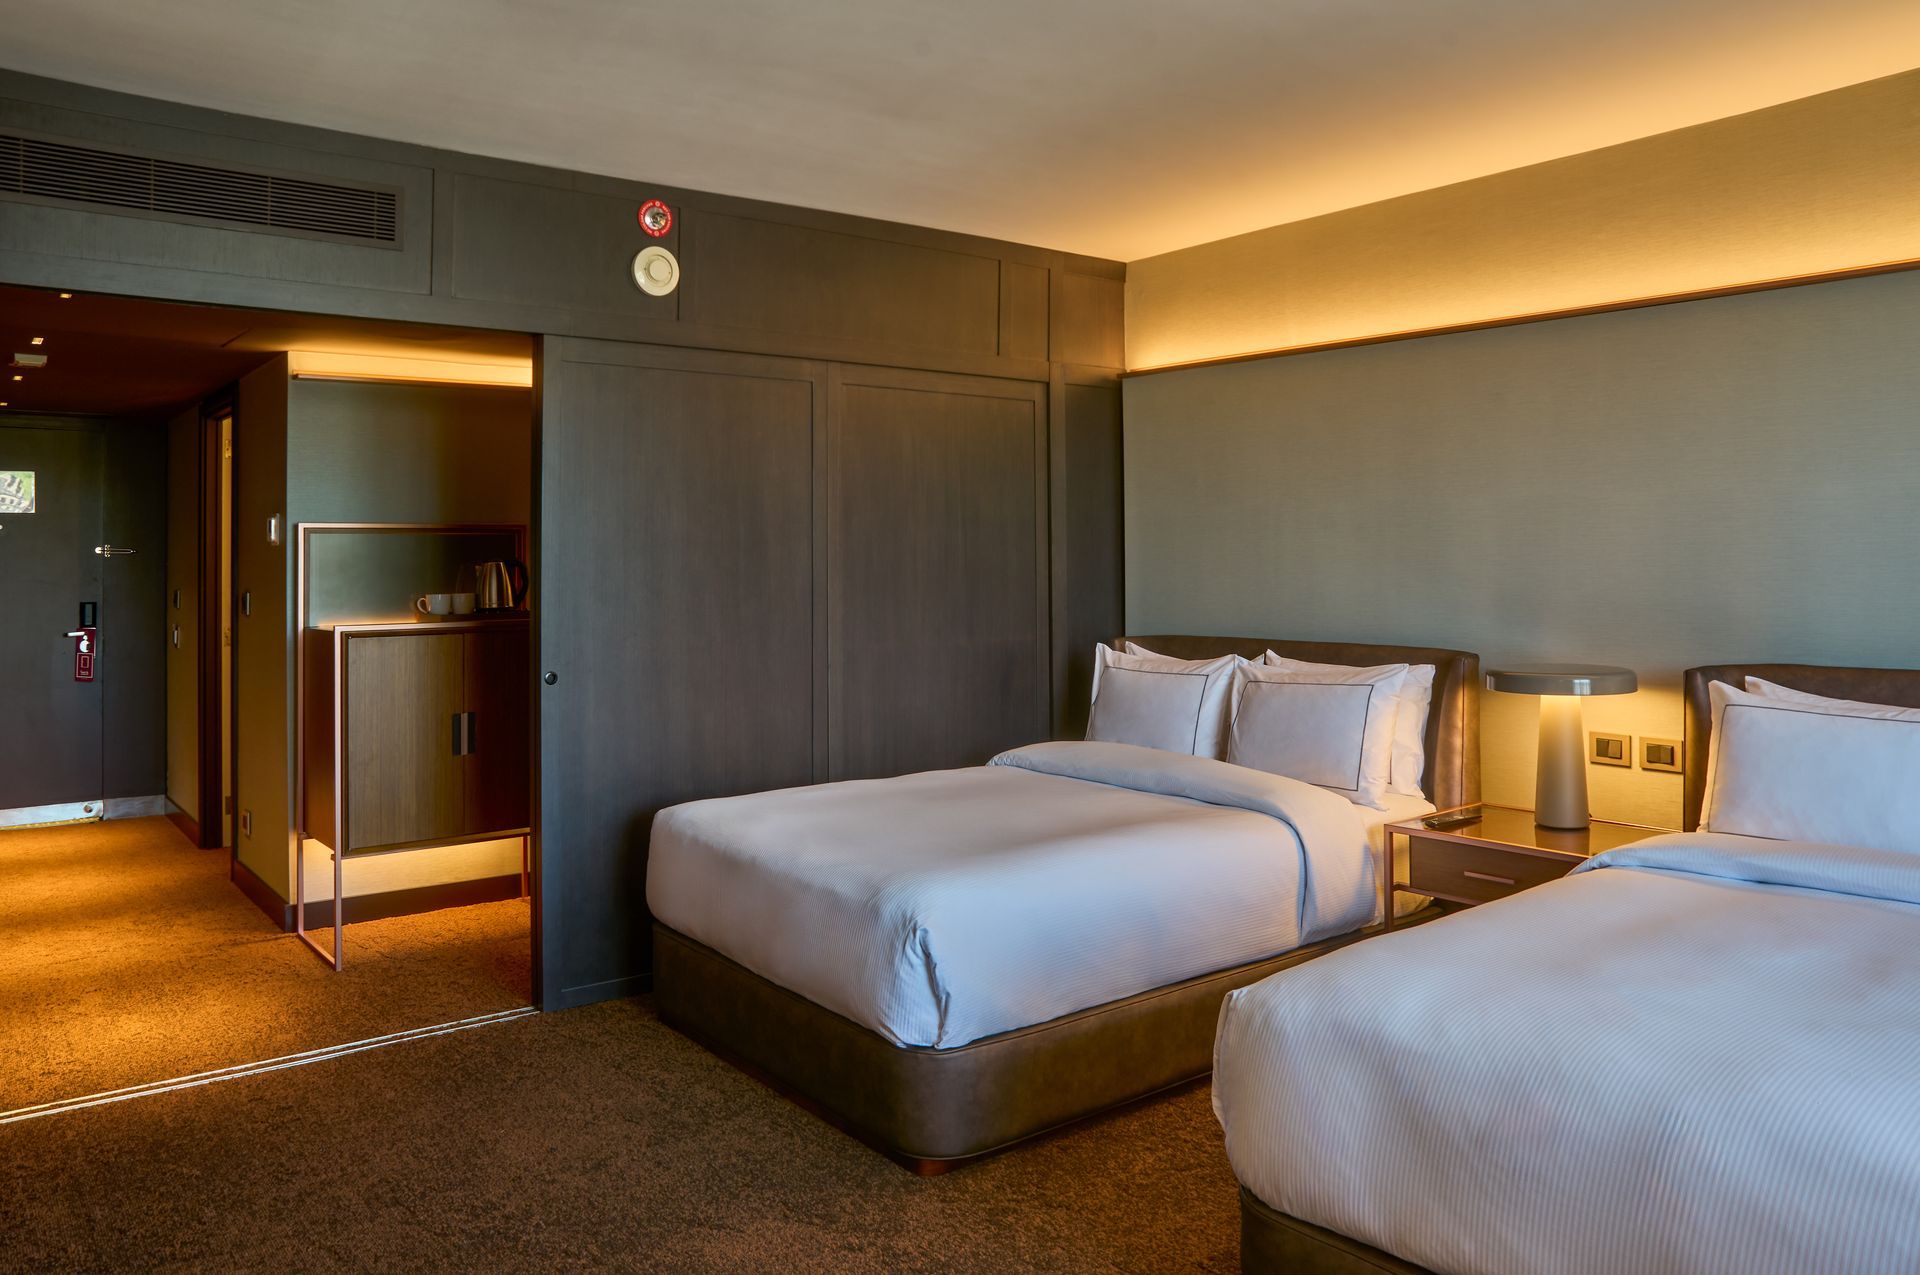 Una habitación de hotel con dos camas y un baño.